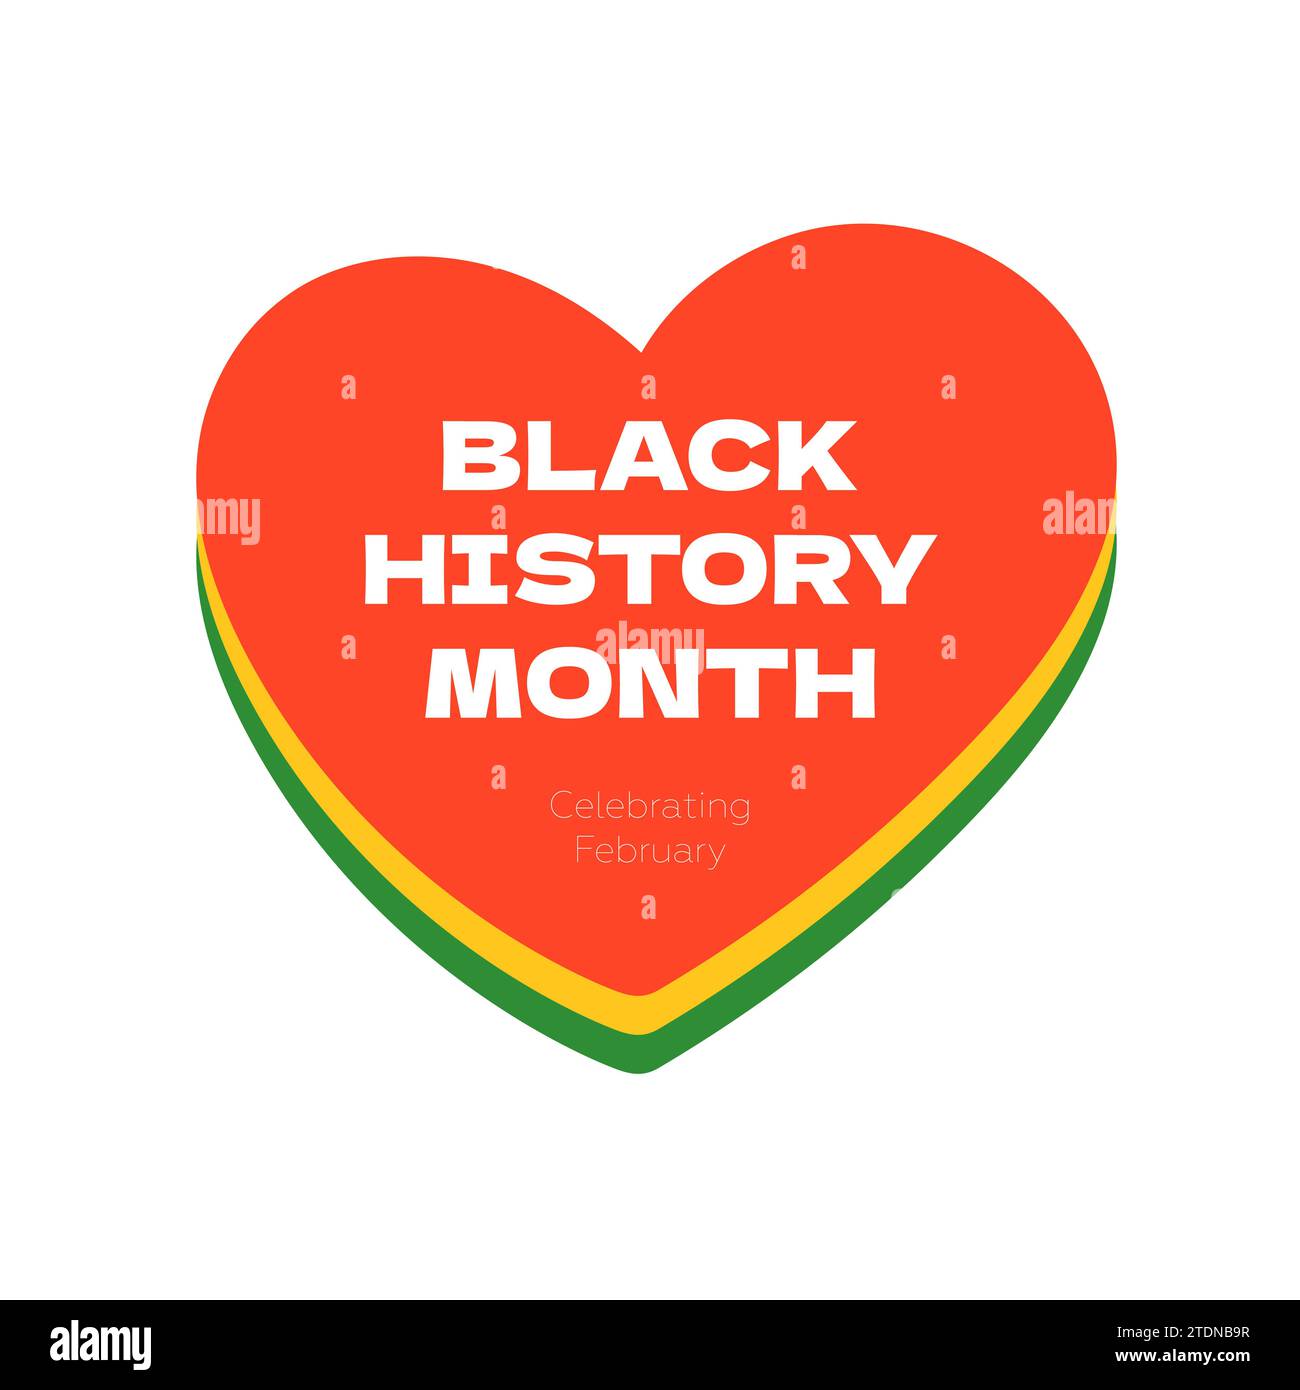 Quadratisches grafisches Banner für den Monat der schwarzen Geschichte. Afroamerikanische Rechte und Kultur feiern. Isoliertes Zeichenherz in rot-gelb-grünen Flaggenfarben. Afrika und Afro Grußkarte Vektor EPS Design Stock Vektor